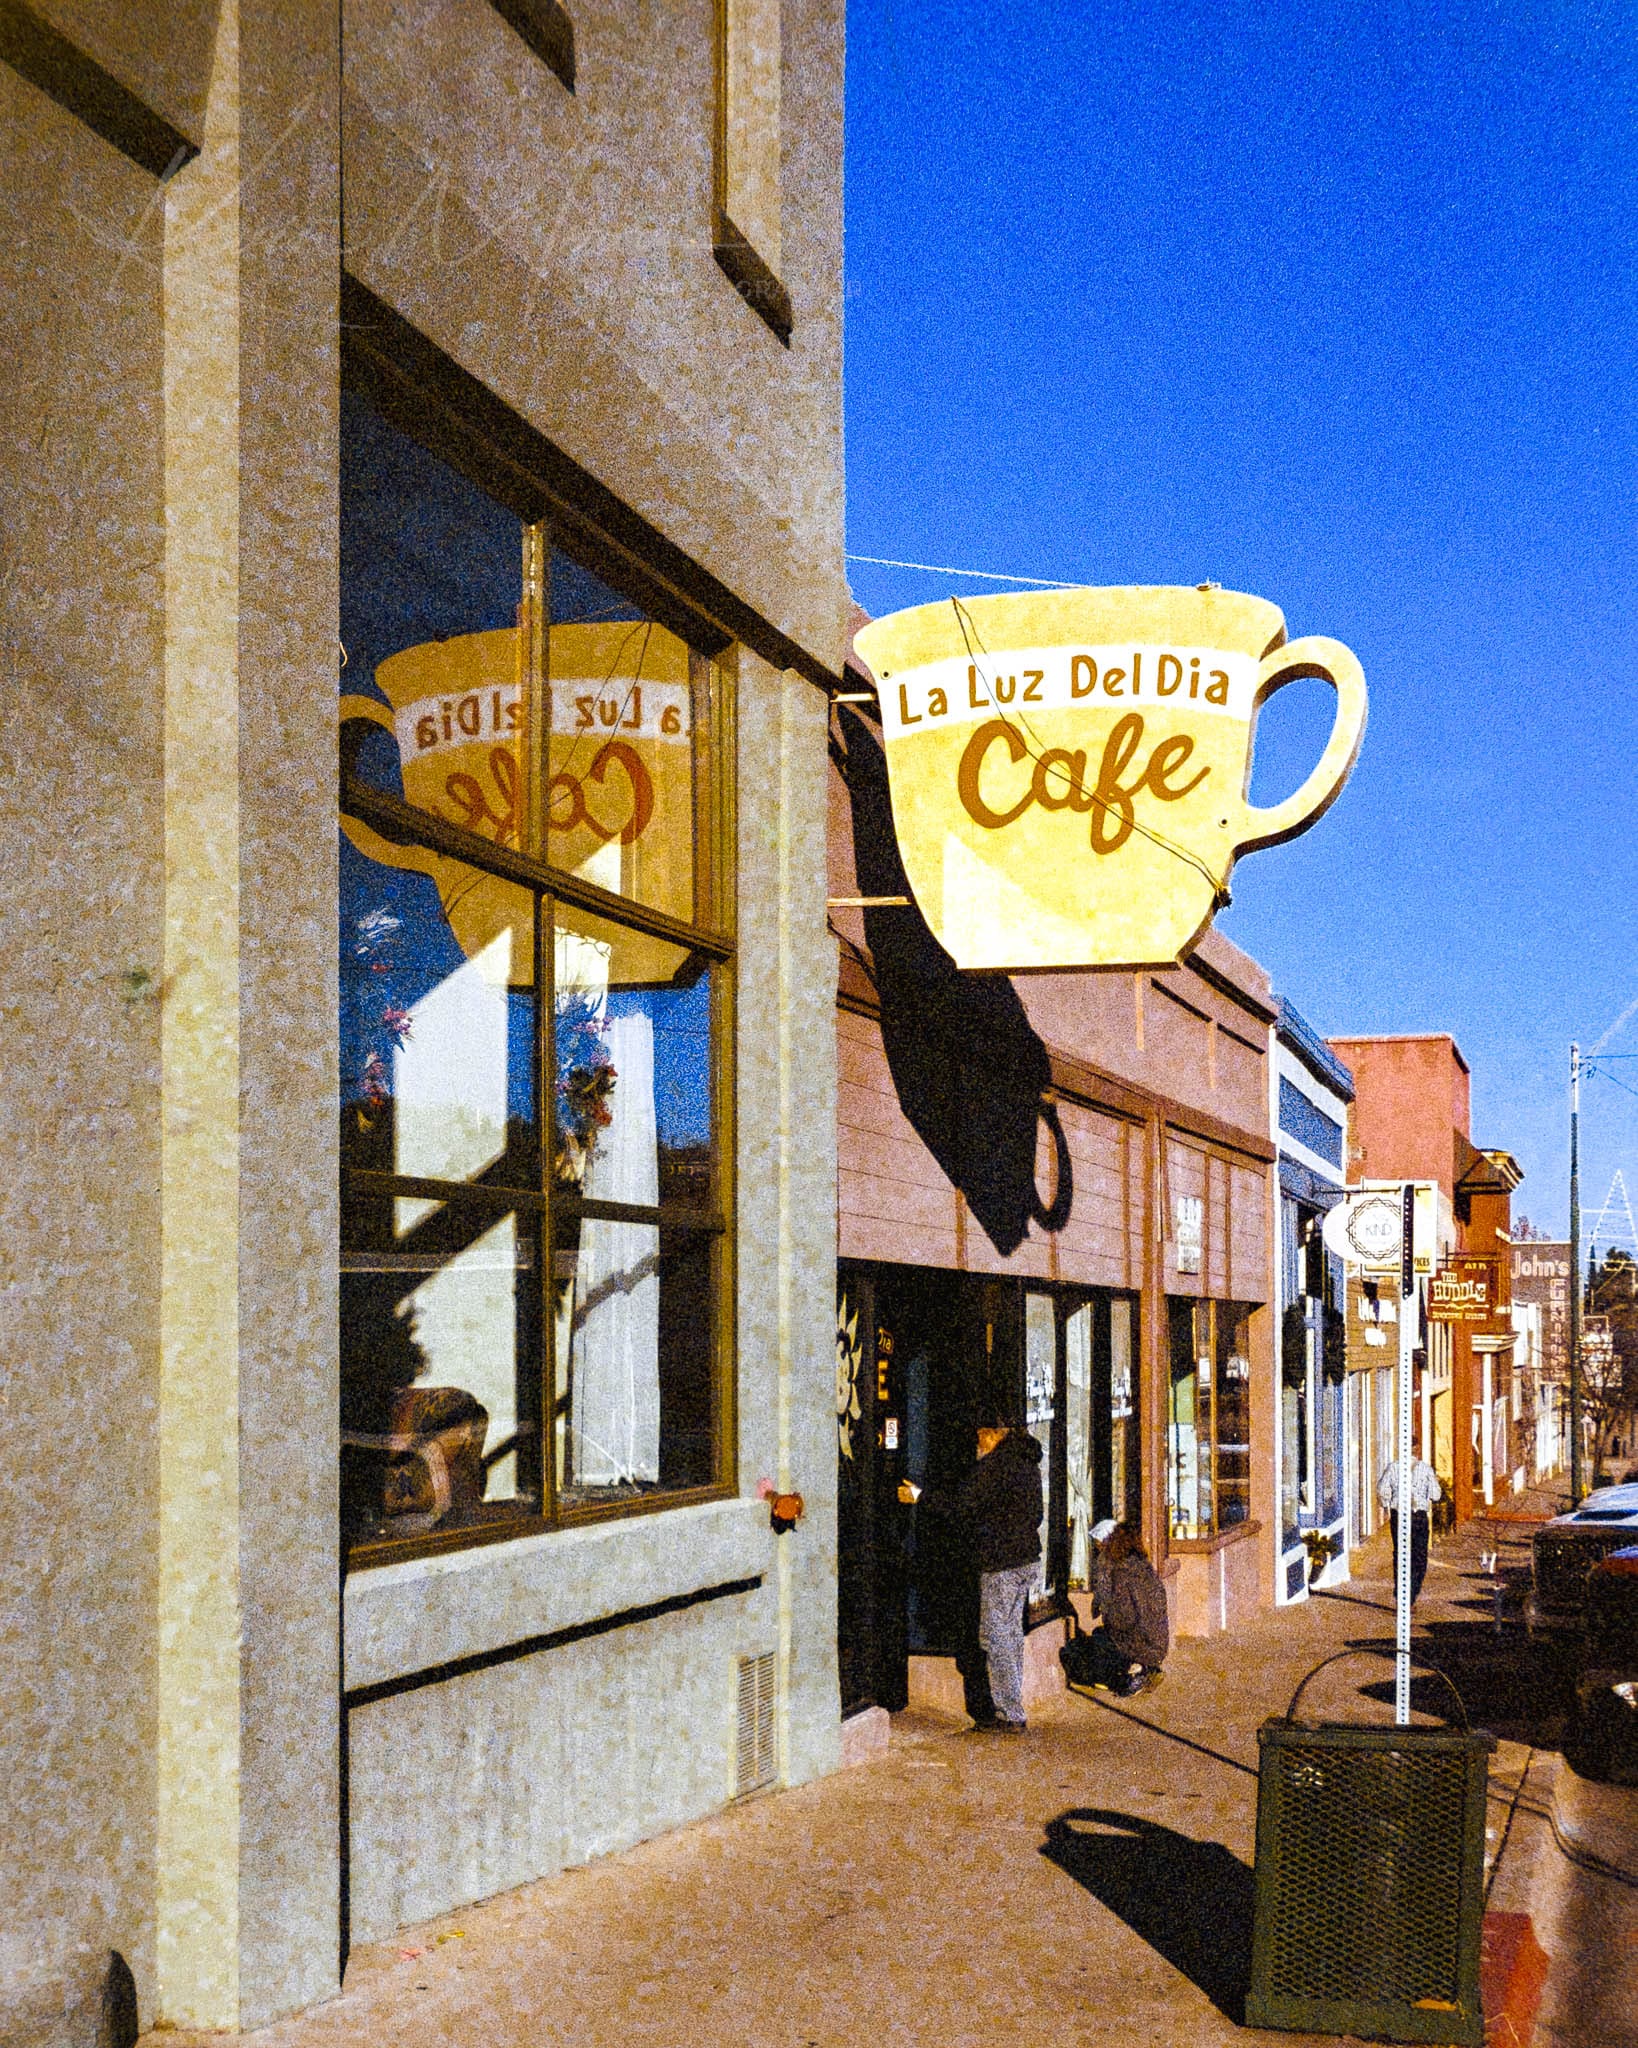 La Luz Del Día Cafés vibrant sign on a sunny day in commercial Globe, Arizona.